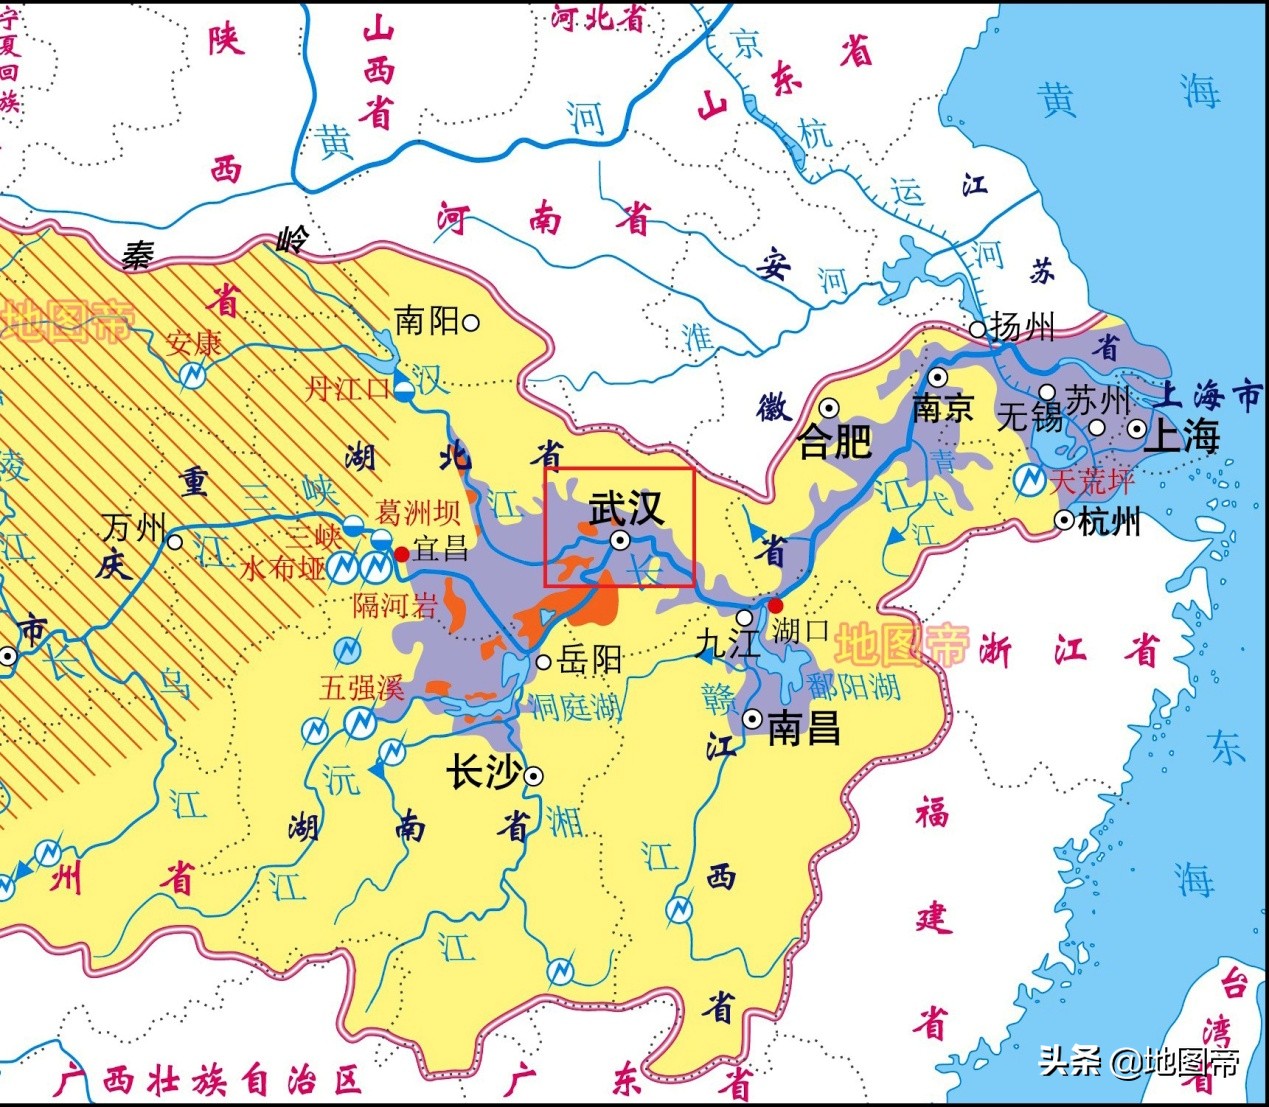 武昌是哪个省的城市(武汉有武昌区、汉阳区，为何没有汉口区？)